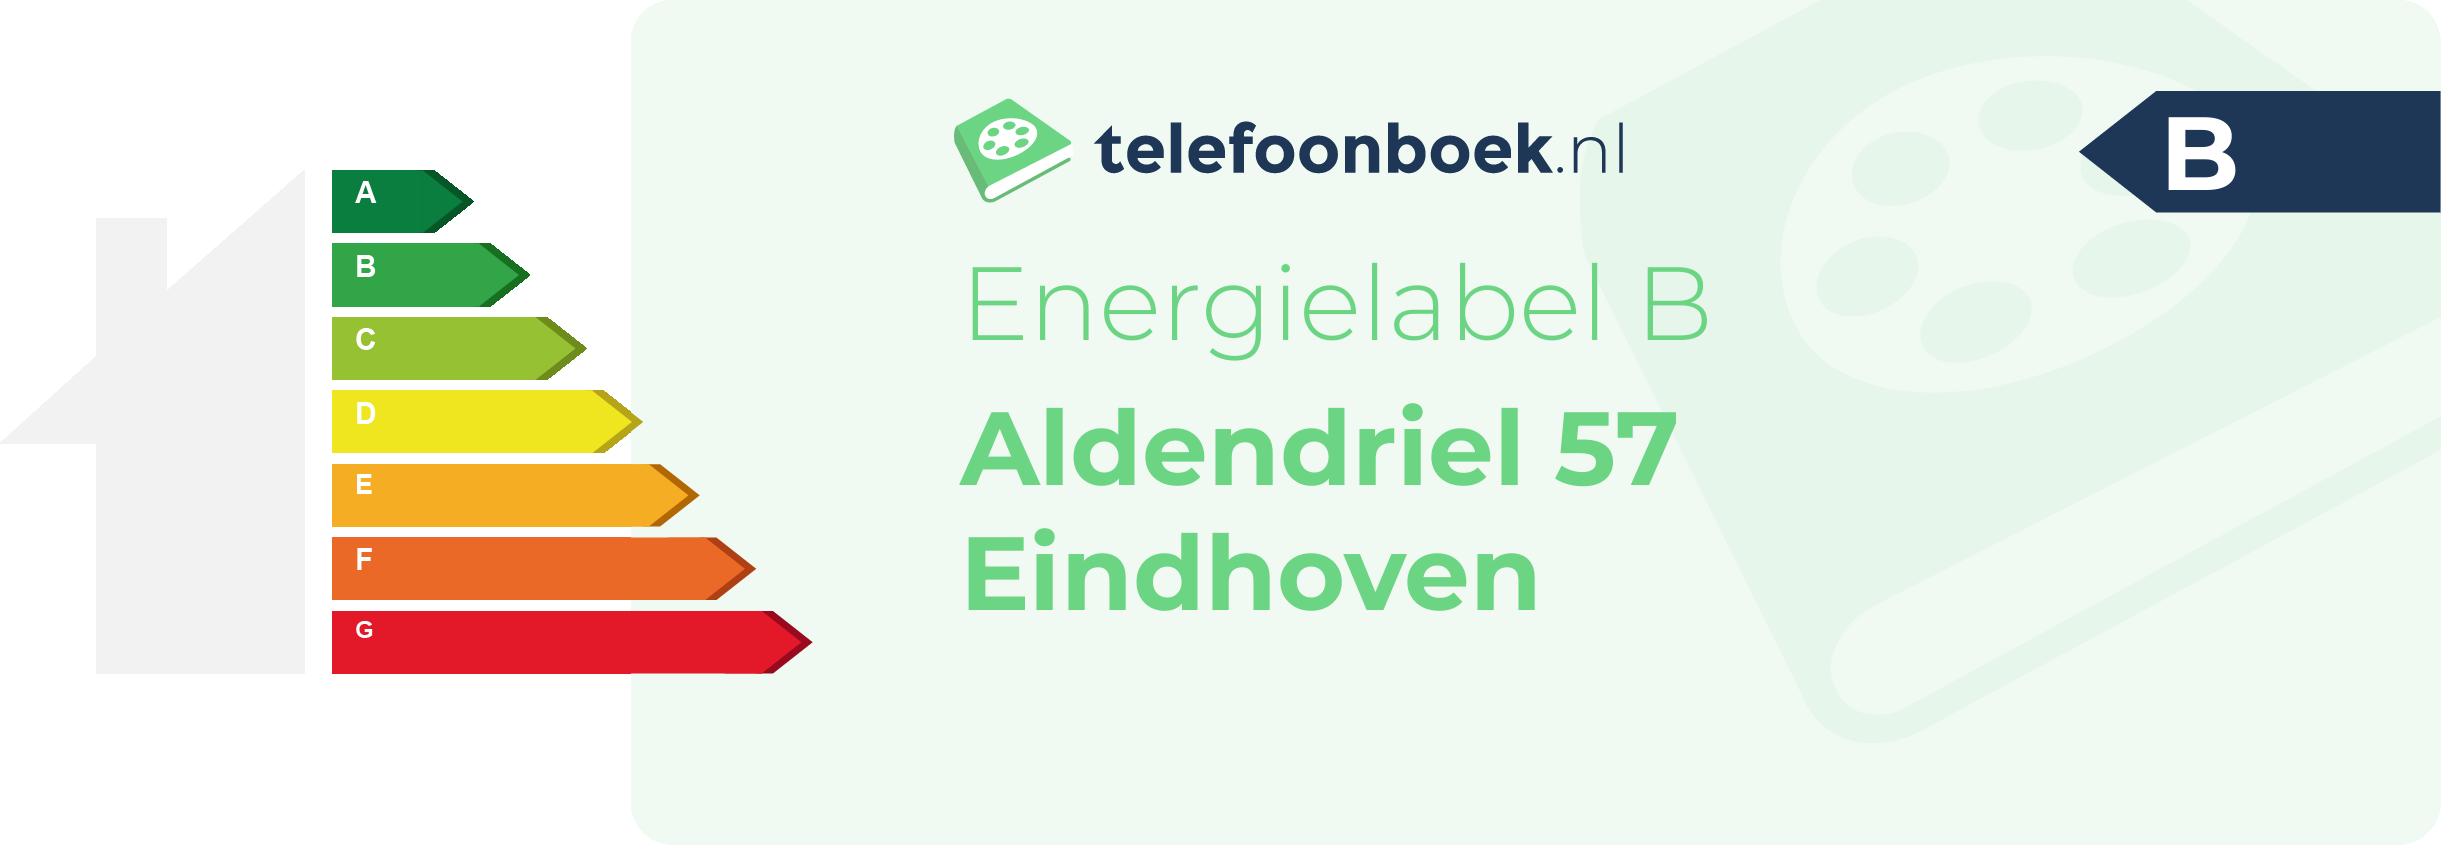 Energielabel Aldendriel 57 Eindhoven